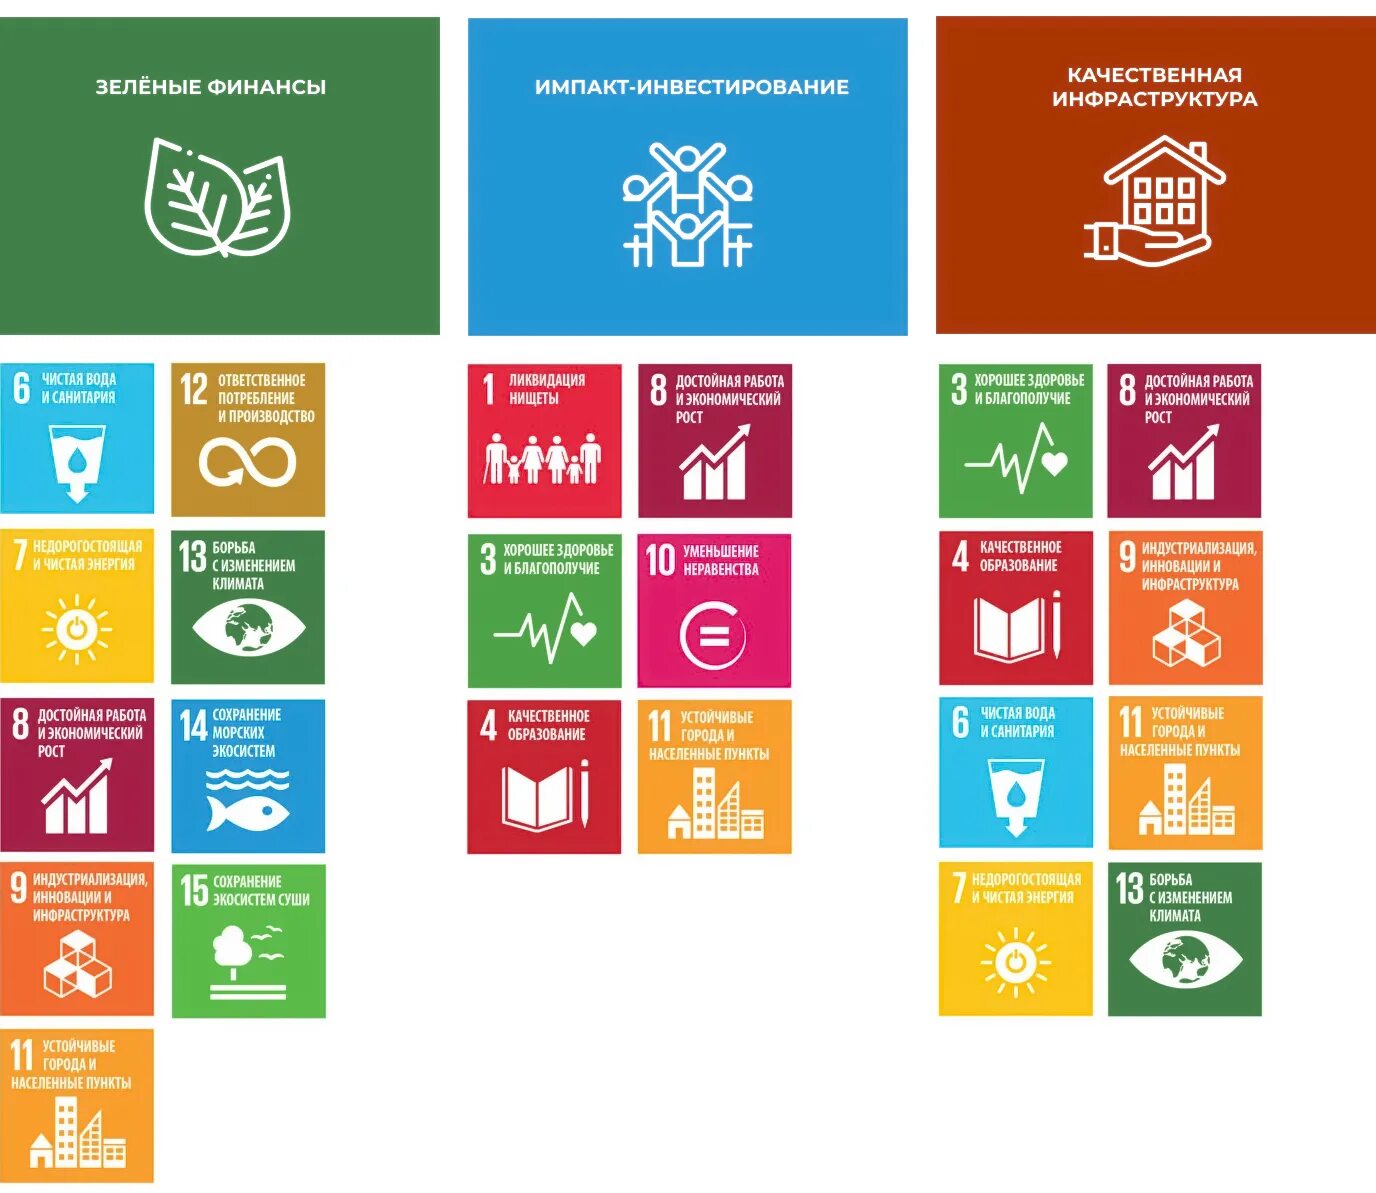 Целей оон в области устойчивого развития. Принципы устойчивого развития ООН. Цели устойчивого развития ООН 2015-2030. Цели устойчивого развития. Цели устойчивого развития ООН.